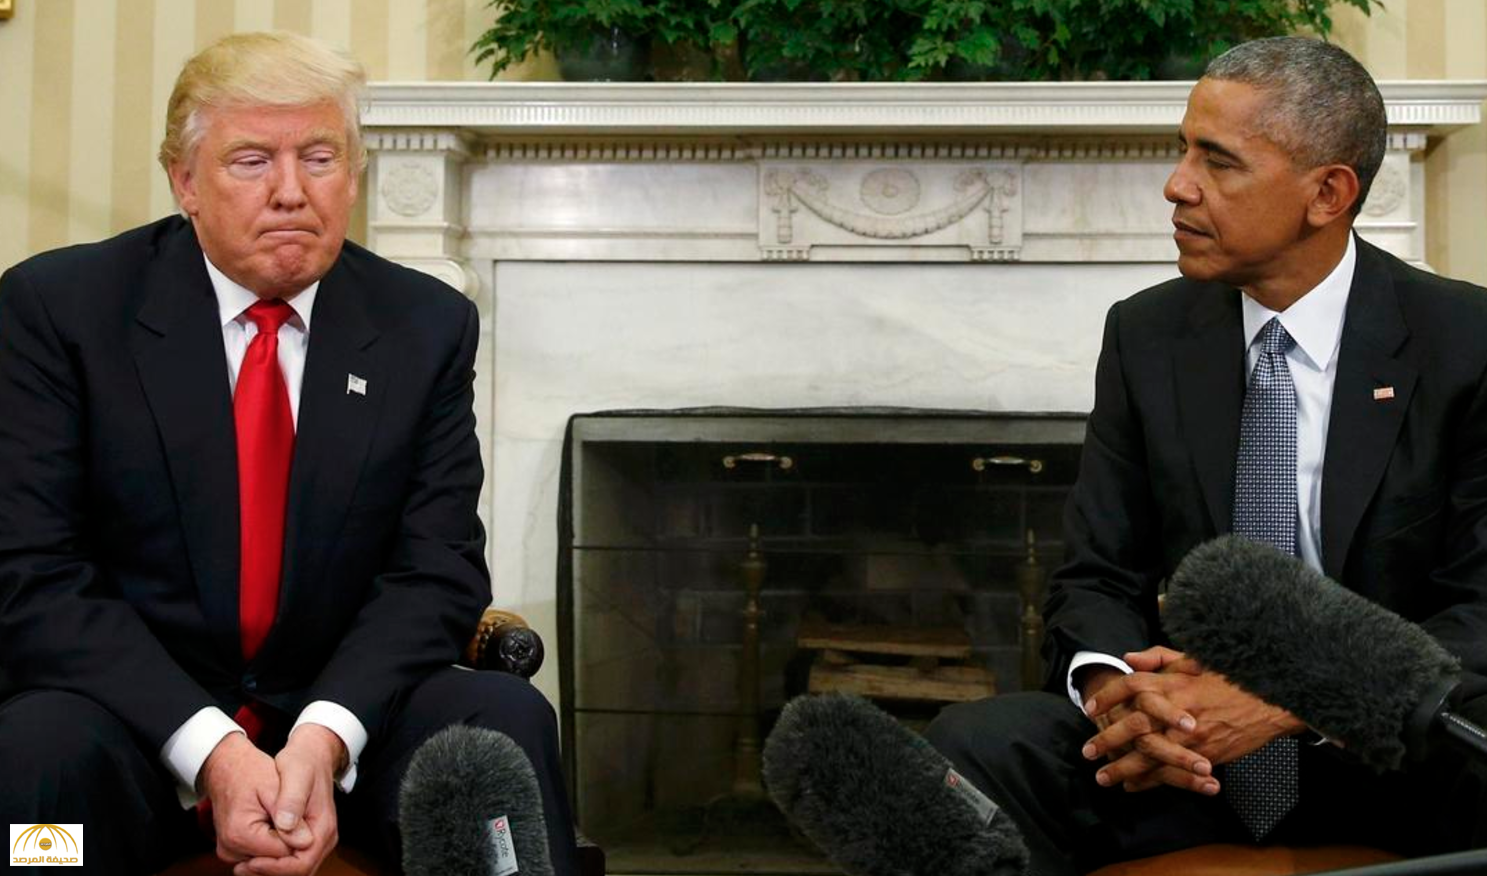 بالفيديو: بعدما وصفه بأنه غير مؤهل ليكون رئيسا لأمريكا..ترامب يلتقي أوباما في البيت الأبيض